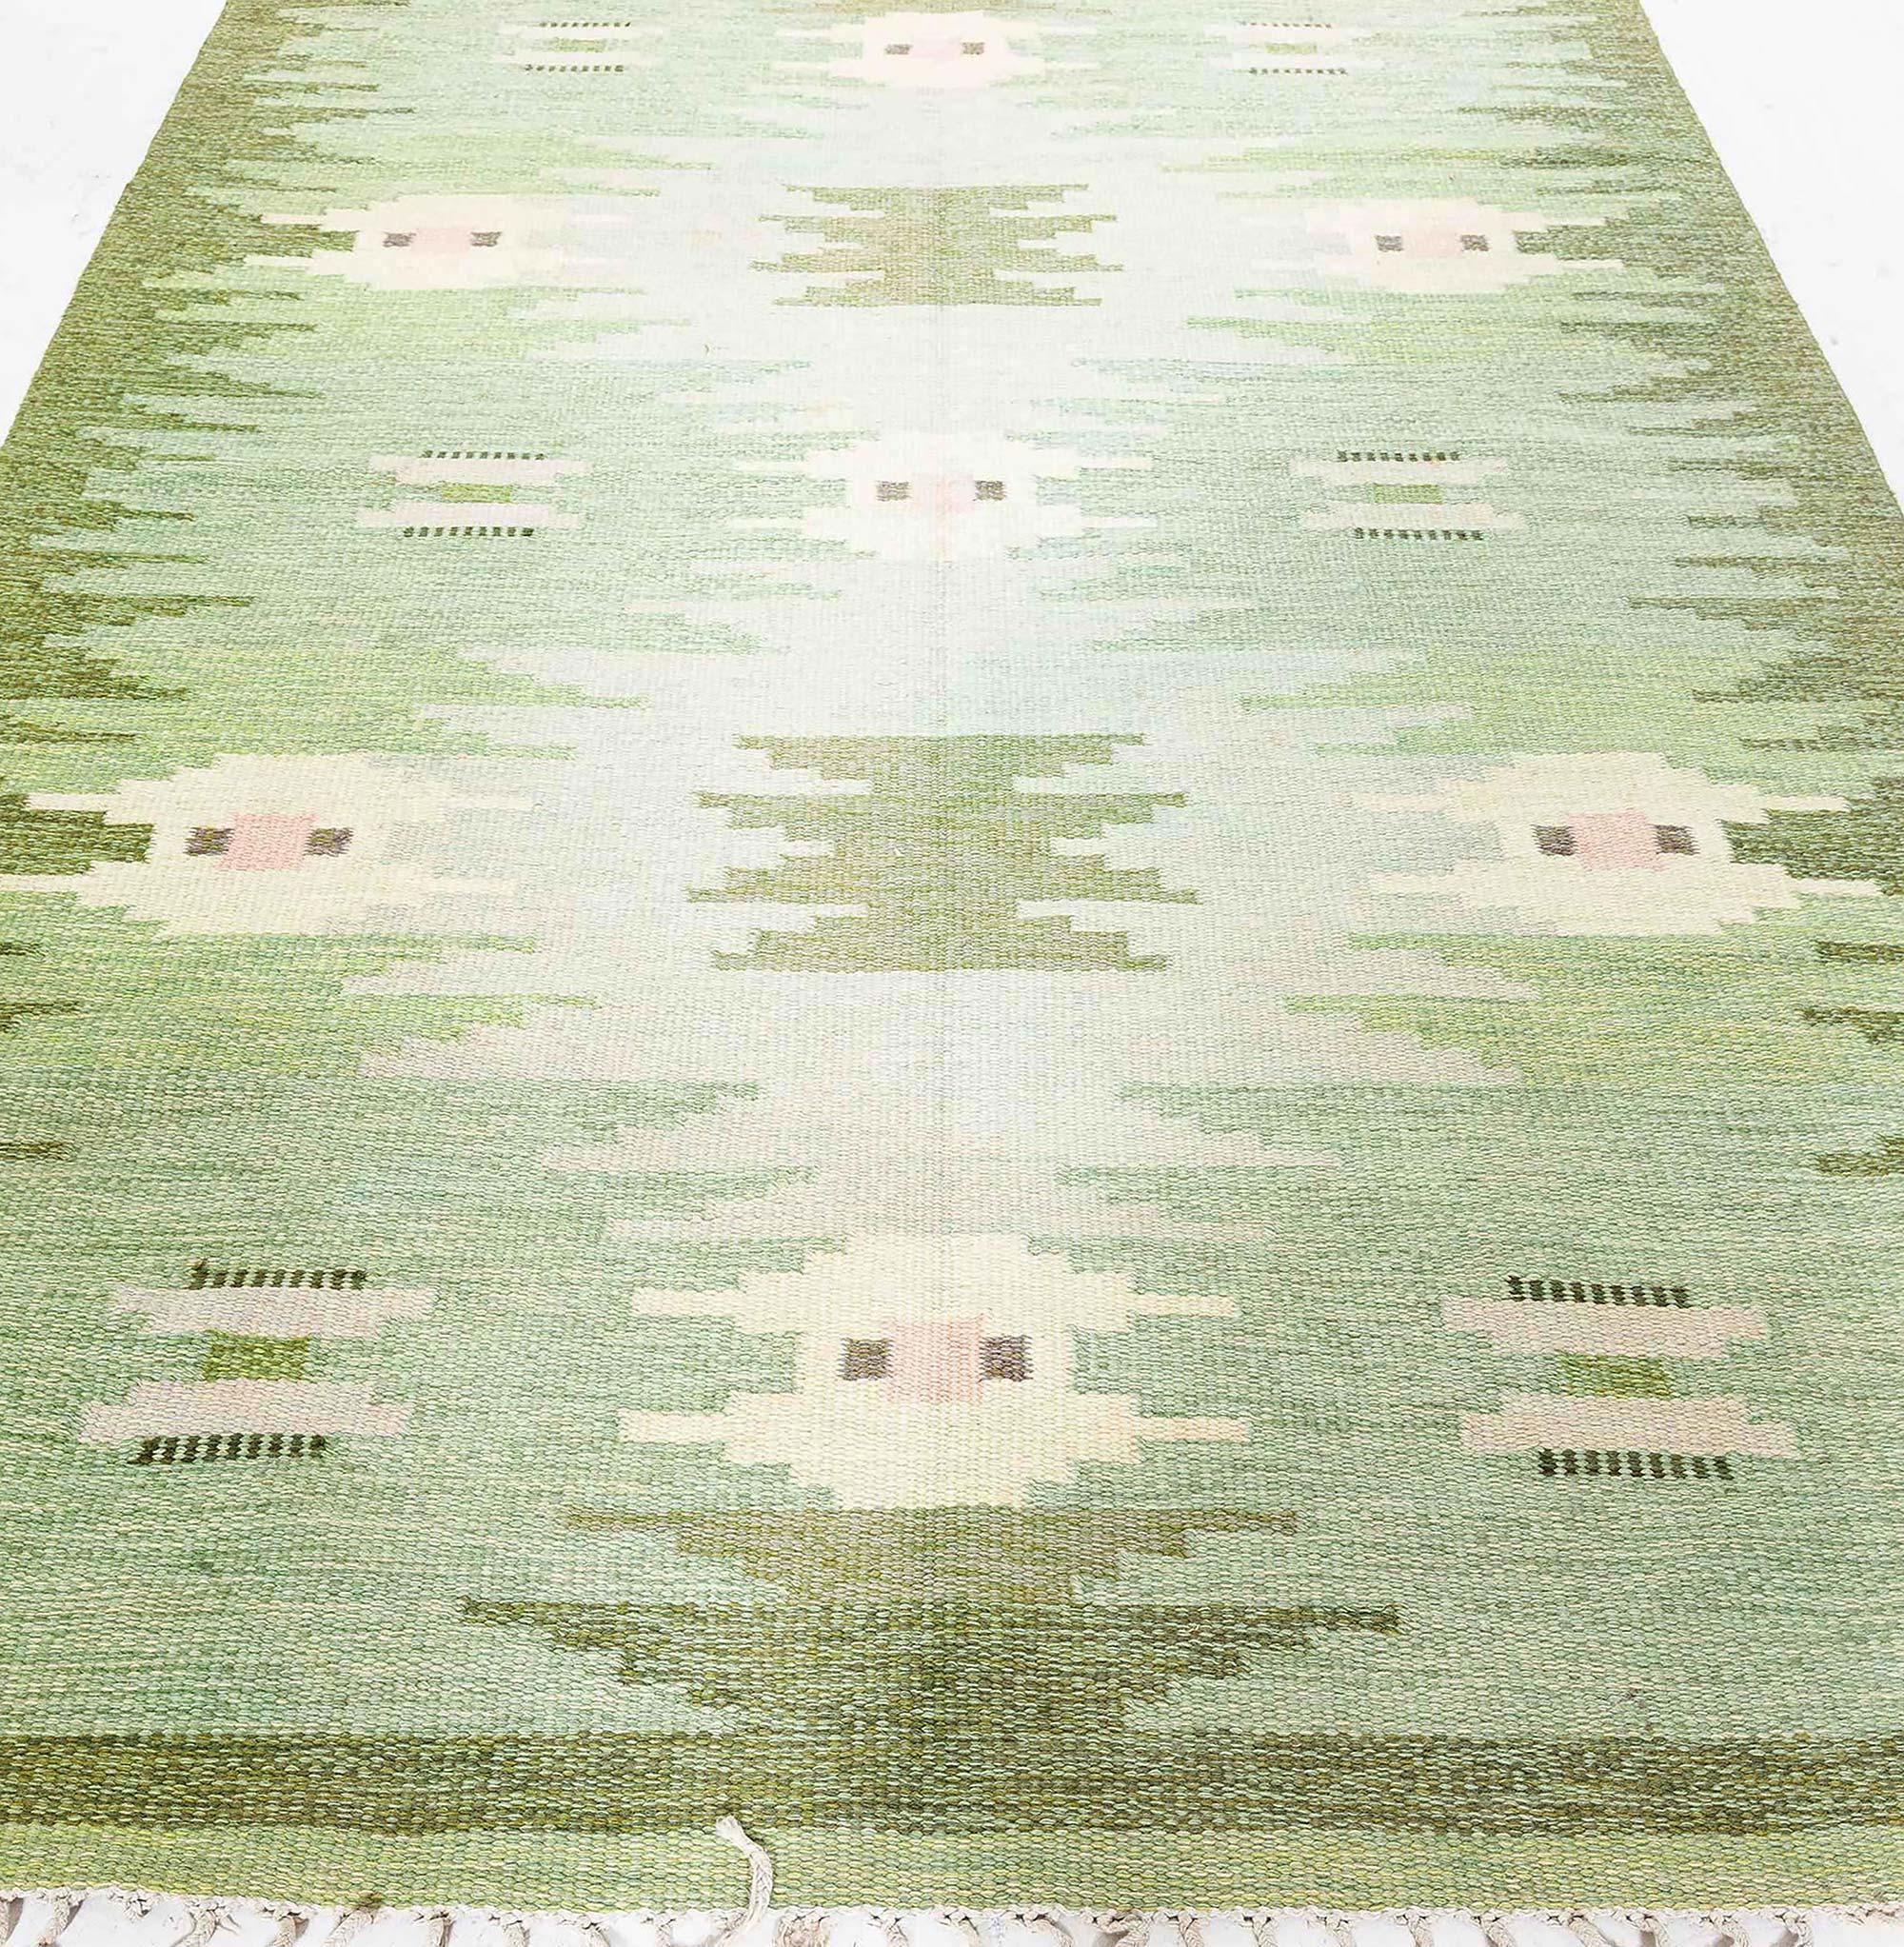 Vintage Swedish Flat Woven by Gitt Grannsjo Carlsson
Size: 5'6